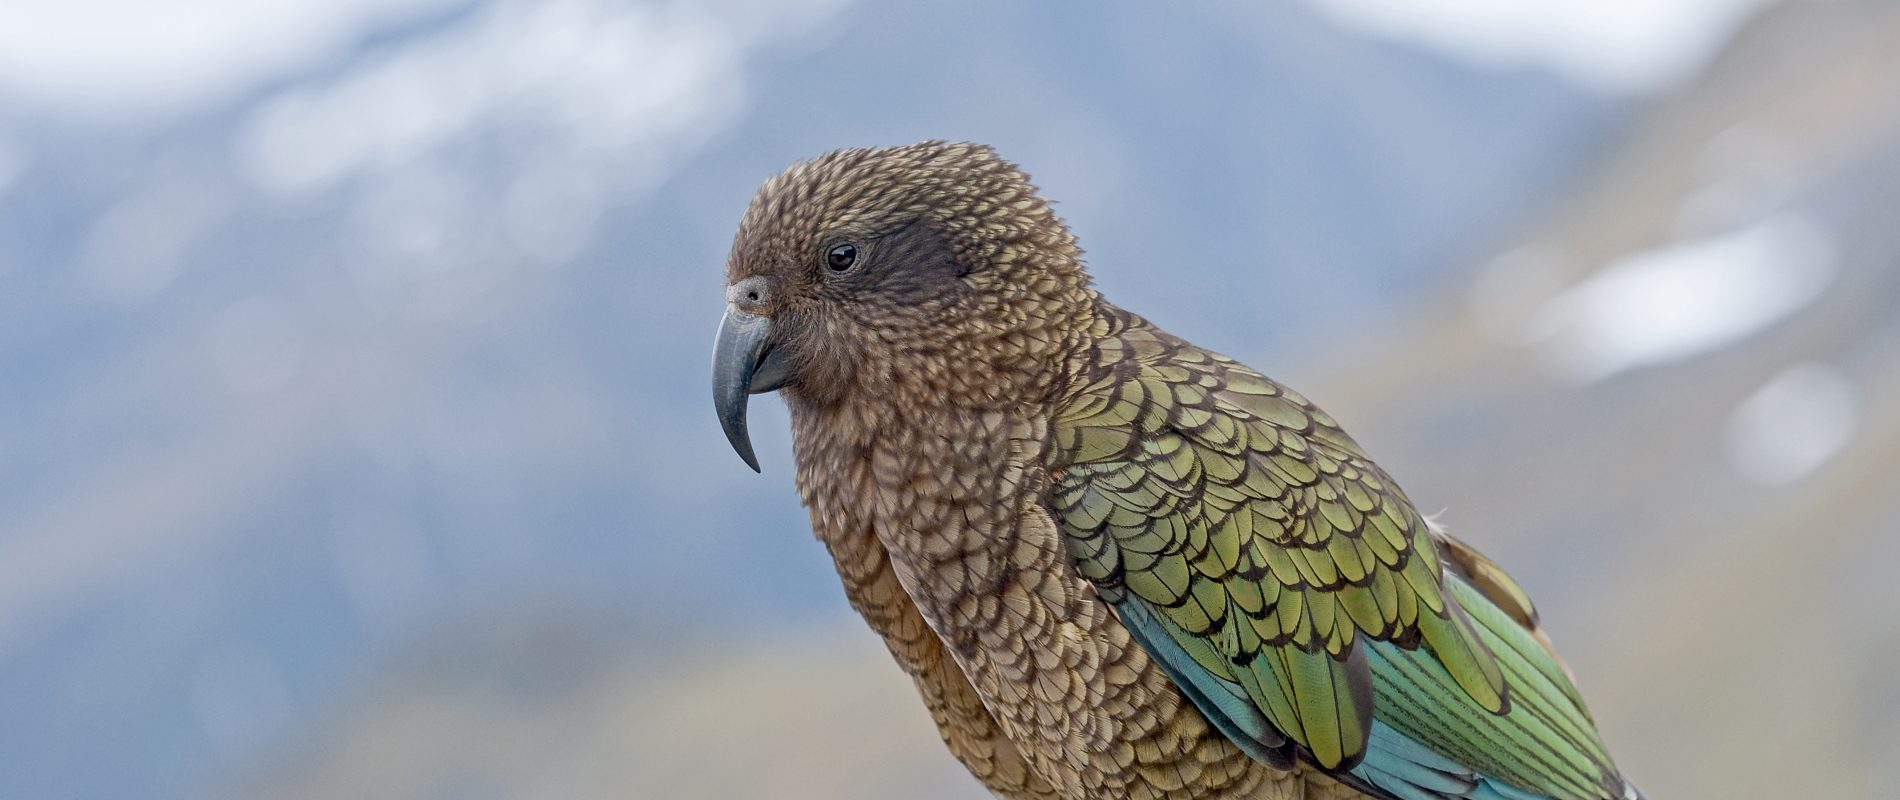 Le kéa de Nouvelle-Zélande : un perroquet dont il faut se méfier